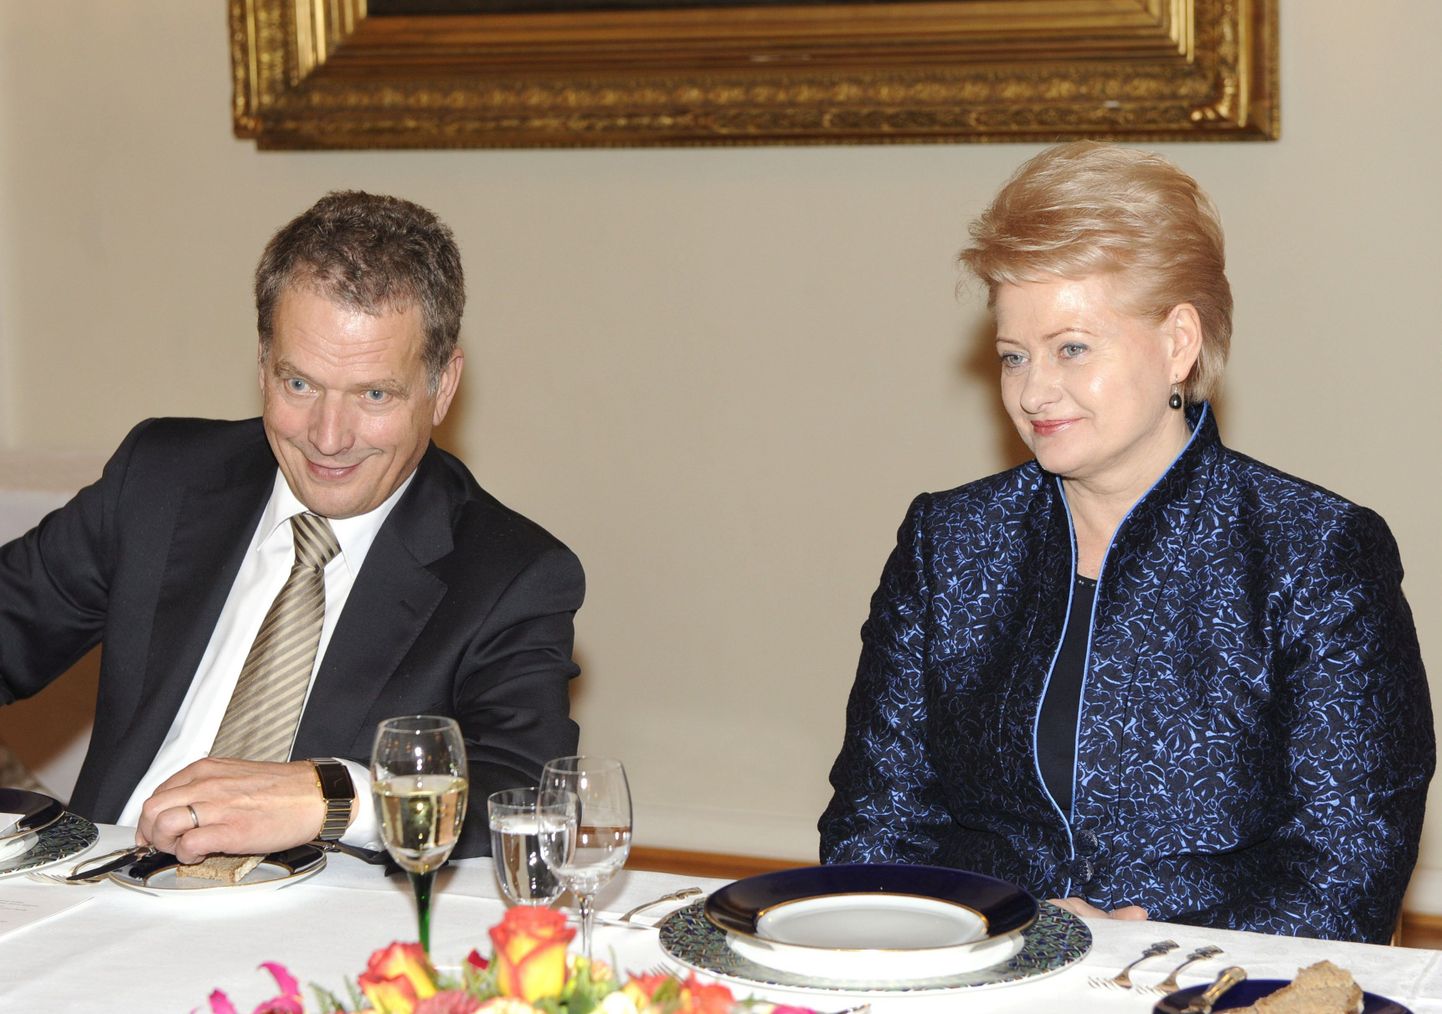 Soome parlamendi spiiker Sauli Niinistö ja Leedu president Dalia Grybauskaite.